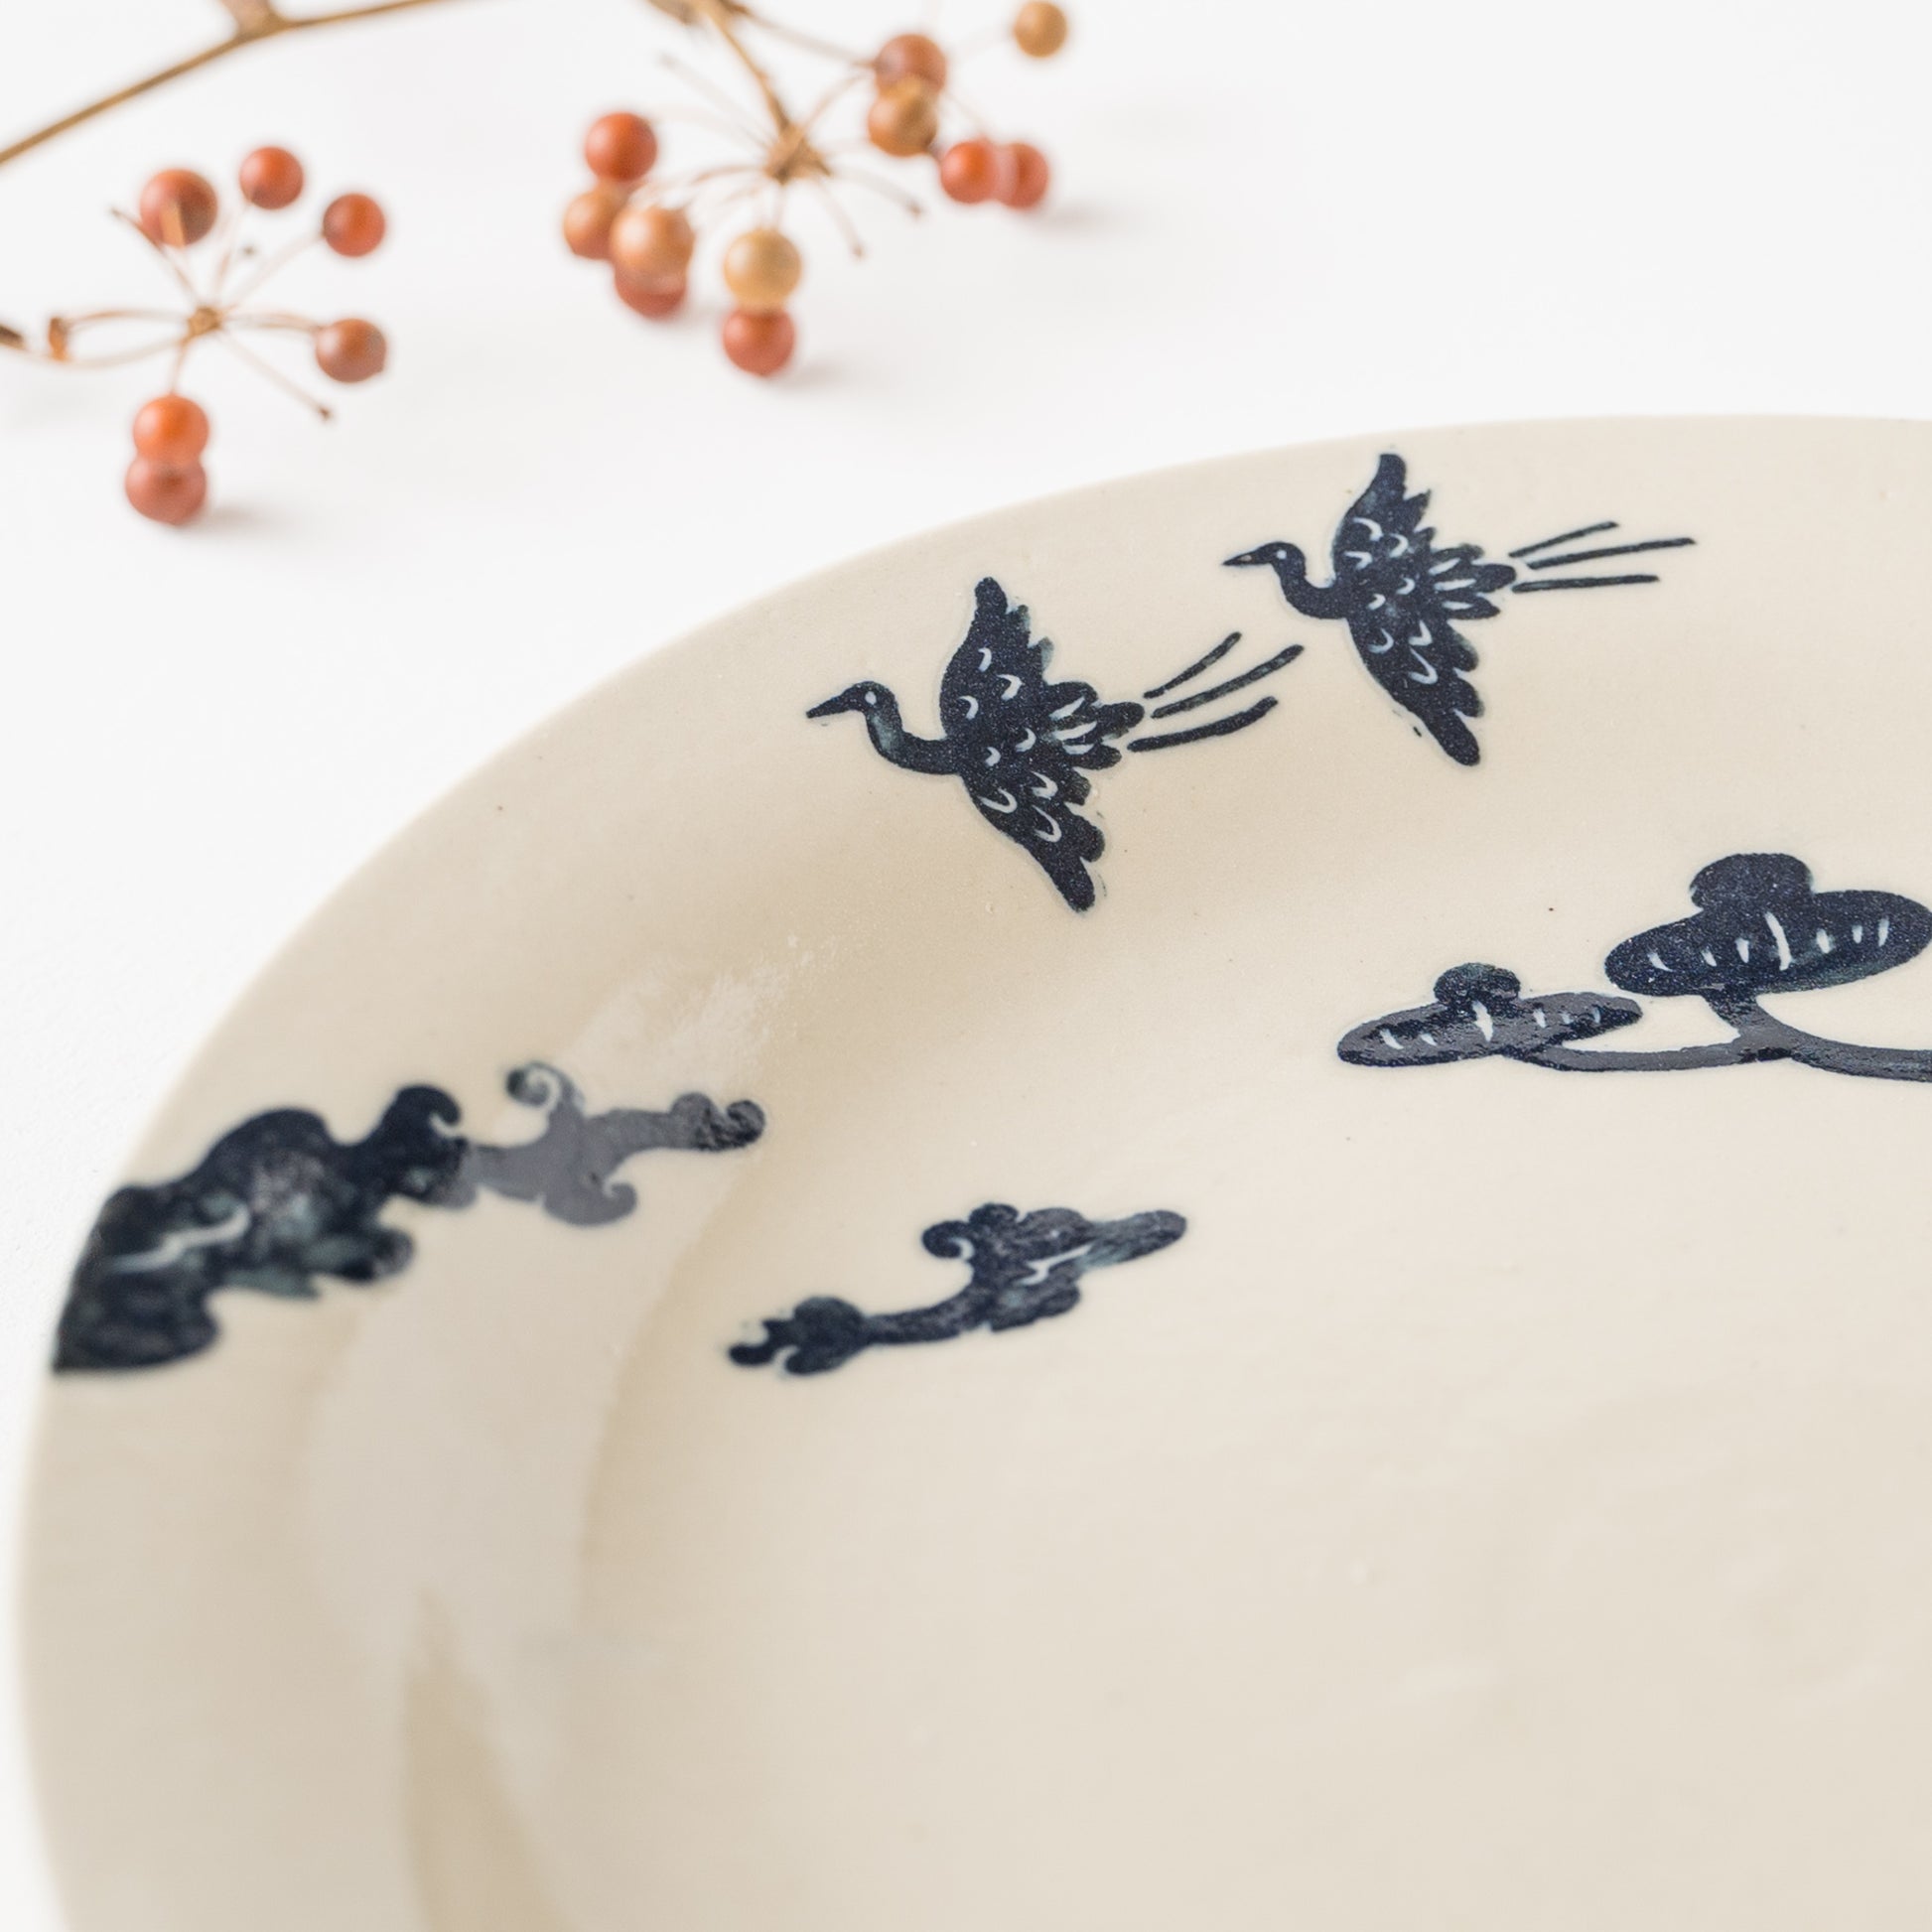 鳥と松の絵柄が素敵な吉村尚子さんの掻き落としのパスタ皿